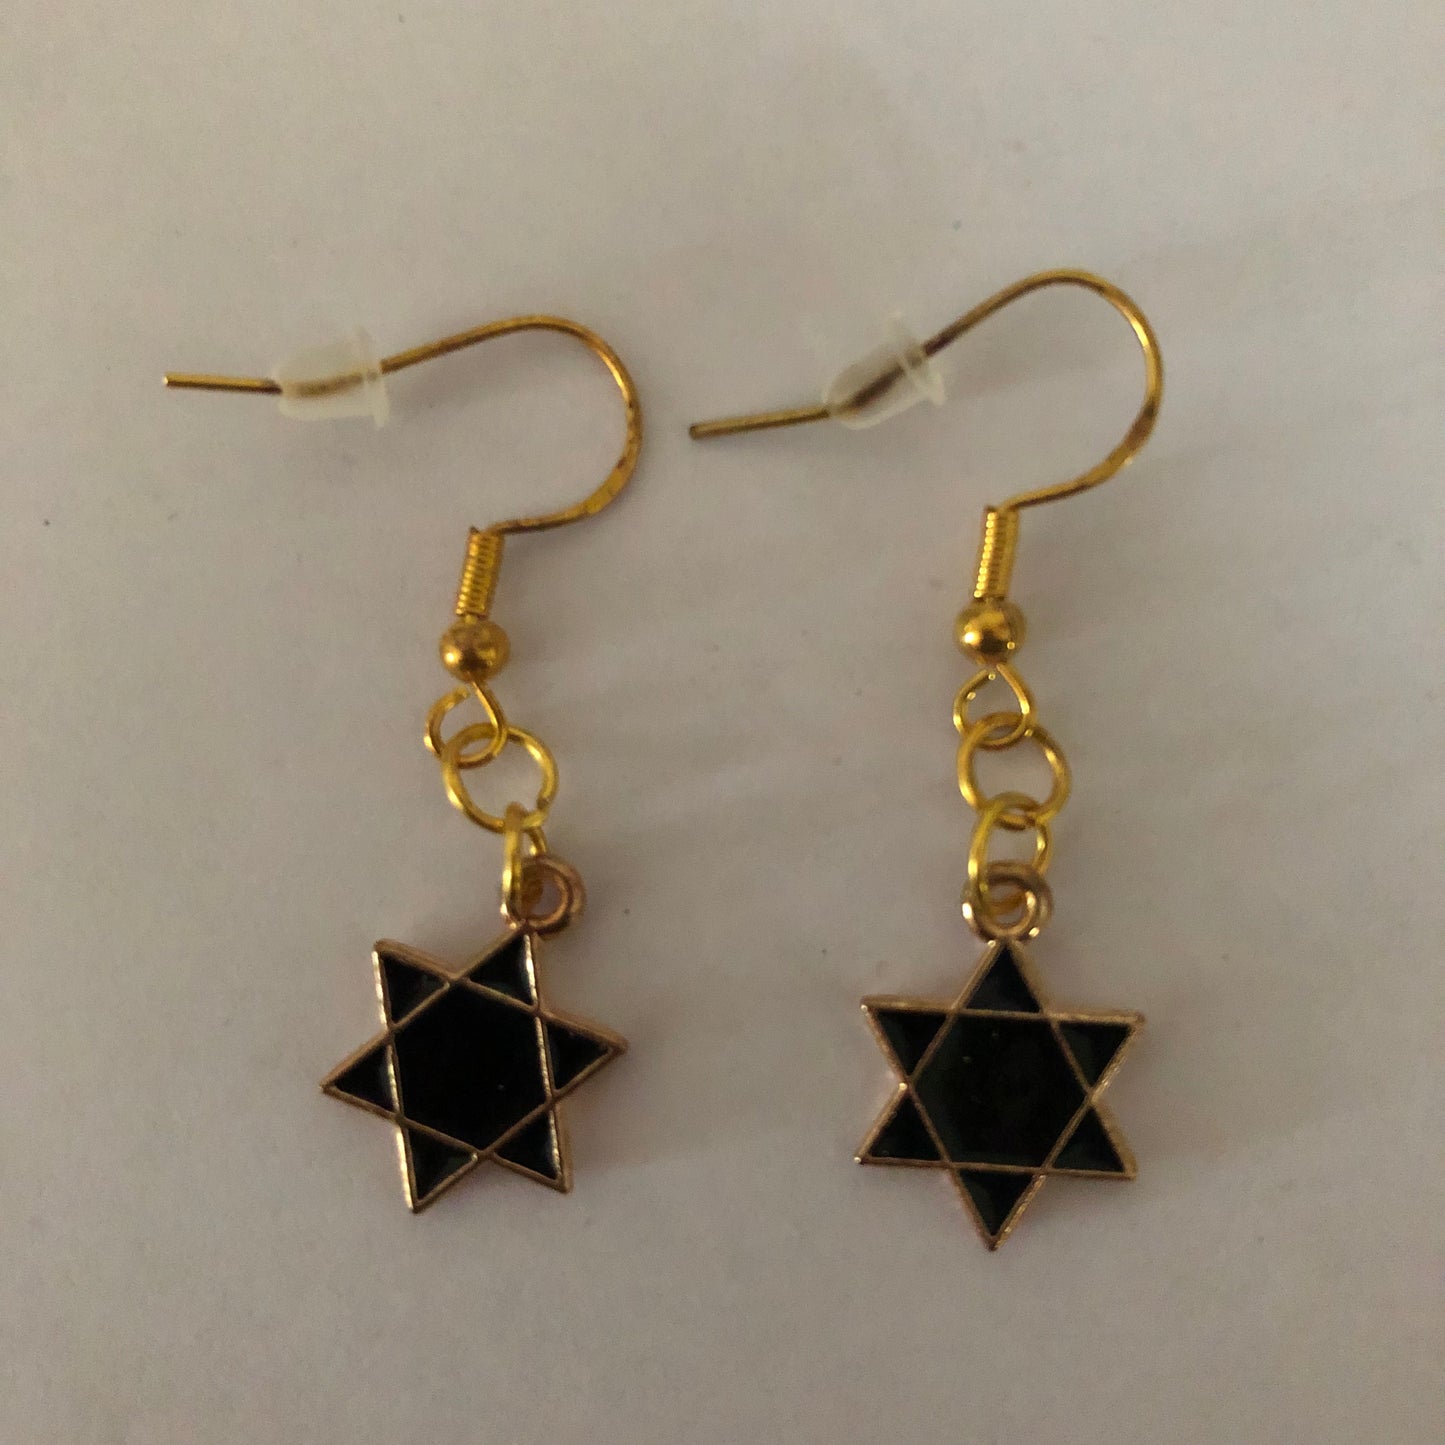 Star-shaped earrings